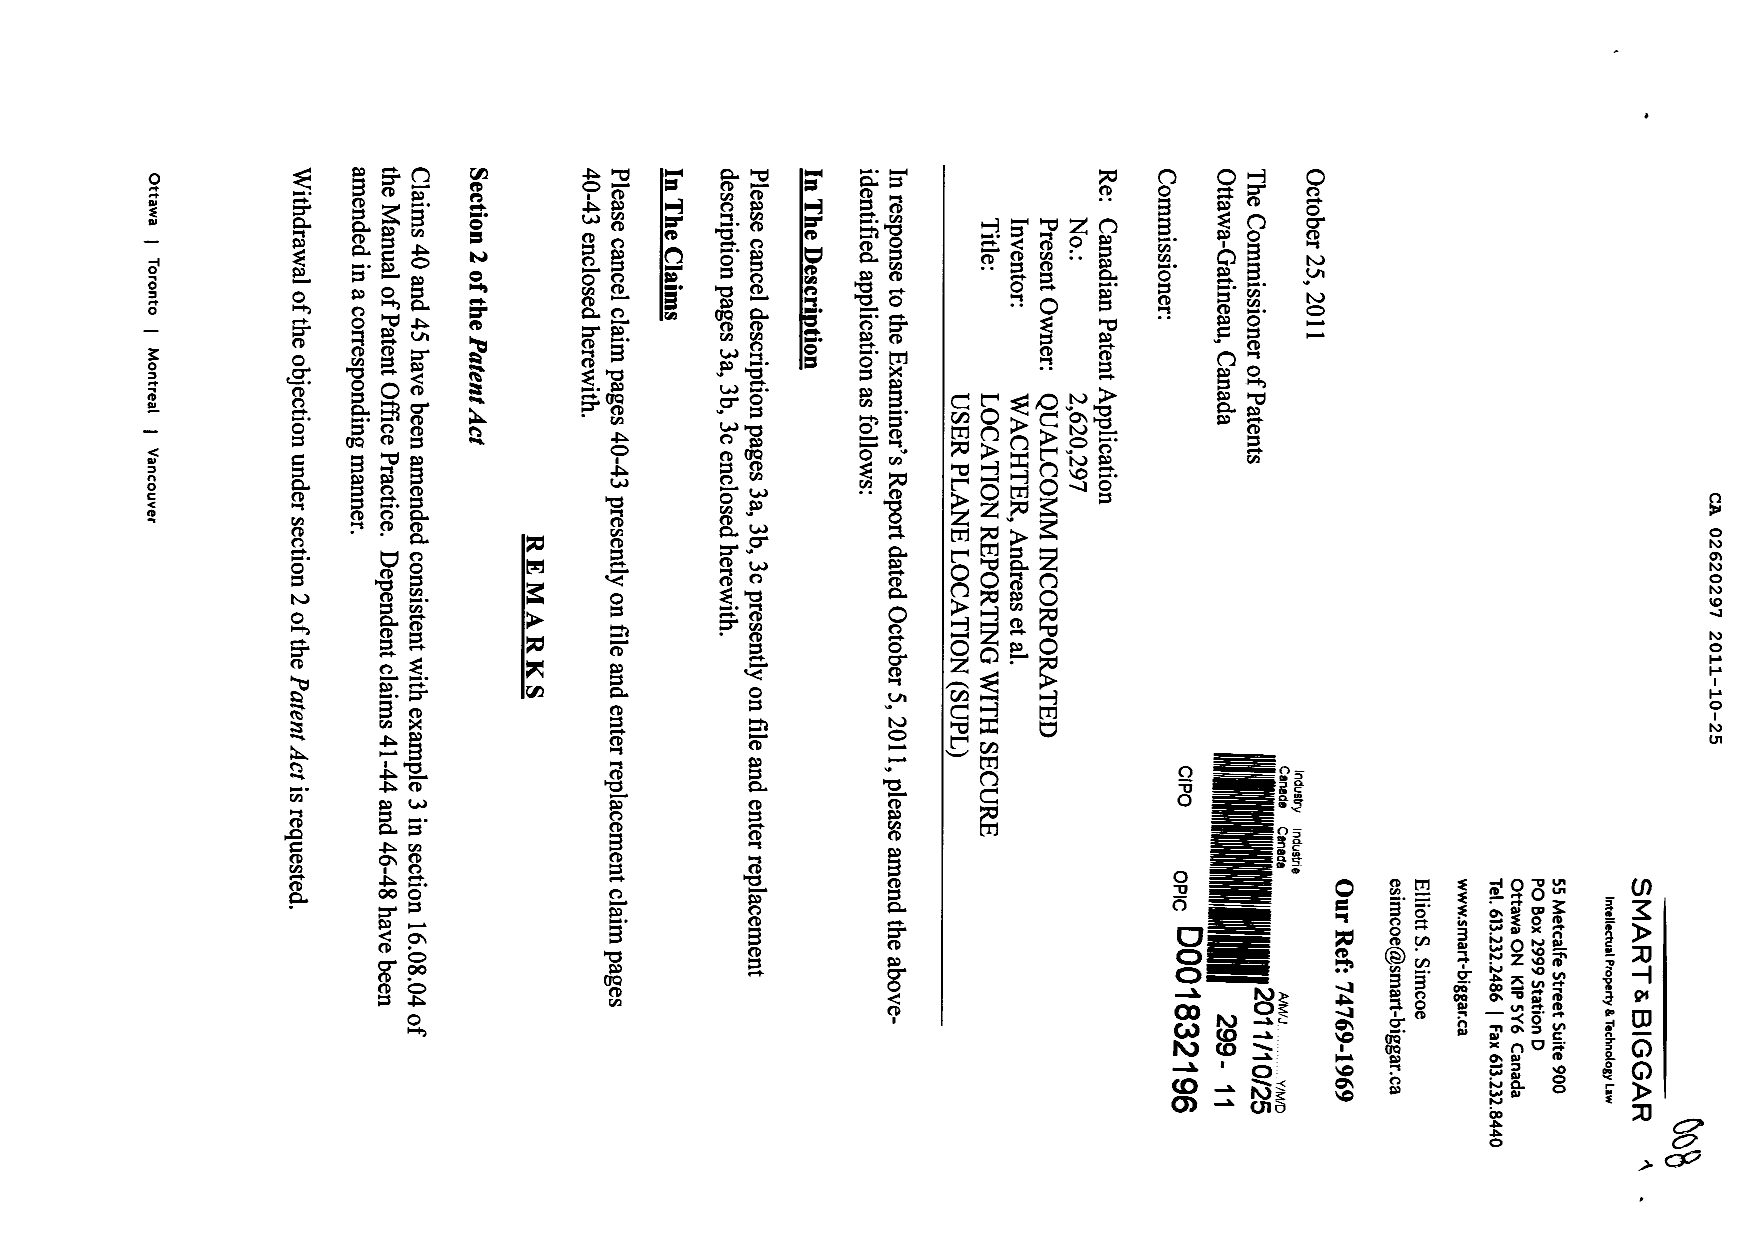 Document de brevet canadien 2620297. Poursuite-Amendment 20101225. Image 1 de 9